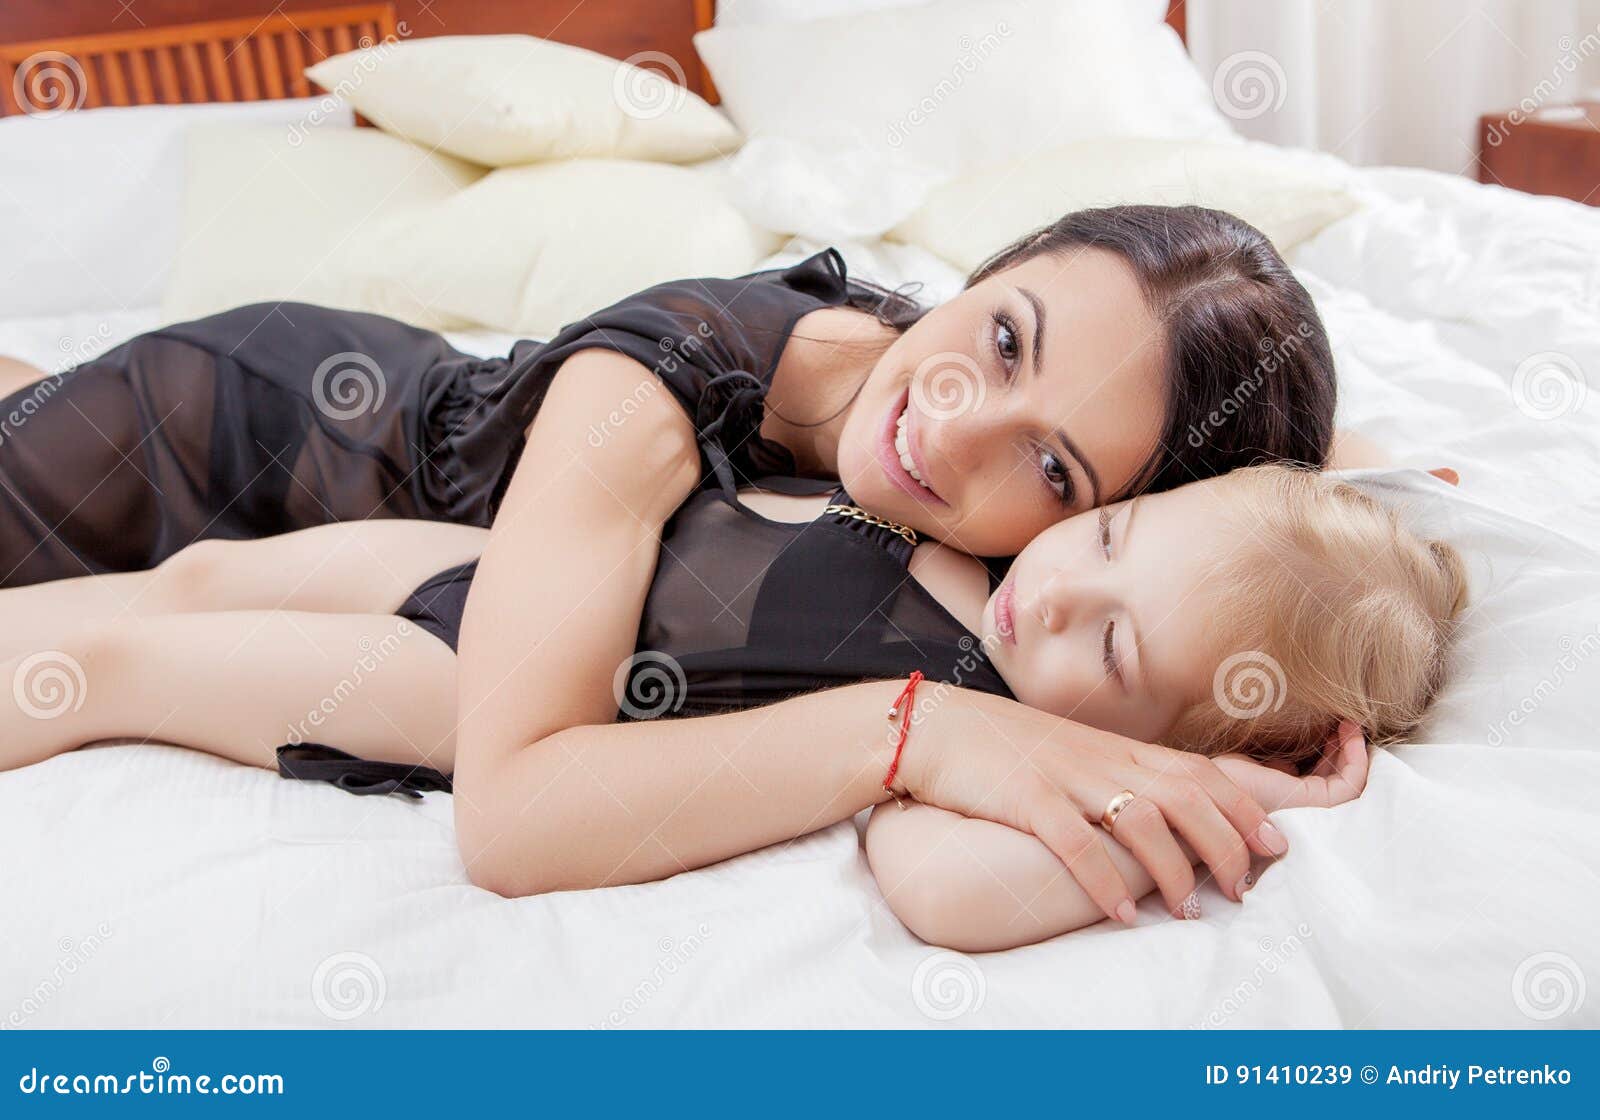 Сестра пришла к брату в постель. Японские Дочки в постели.. Мама обнимает дочь в кровати. Мать обнимает ребенка на кровати. Мама и дочка в кровати в белье.